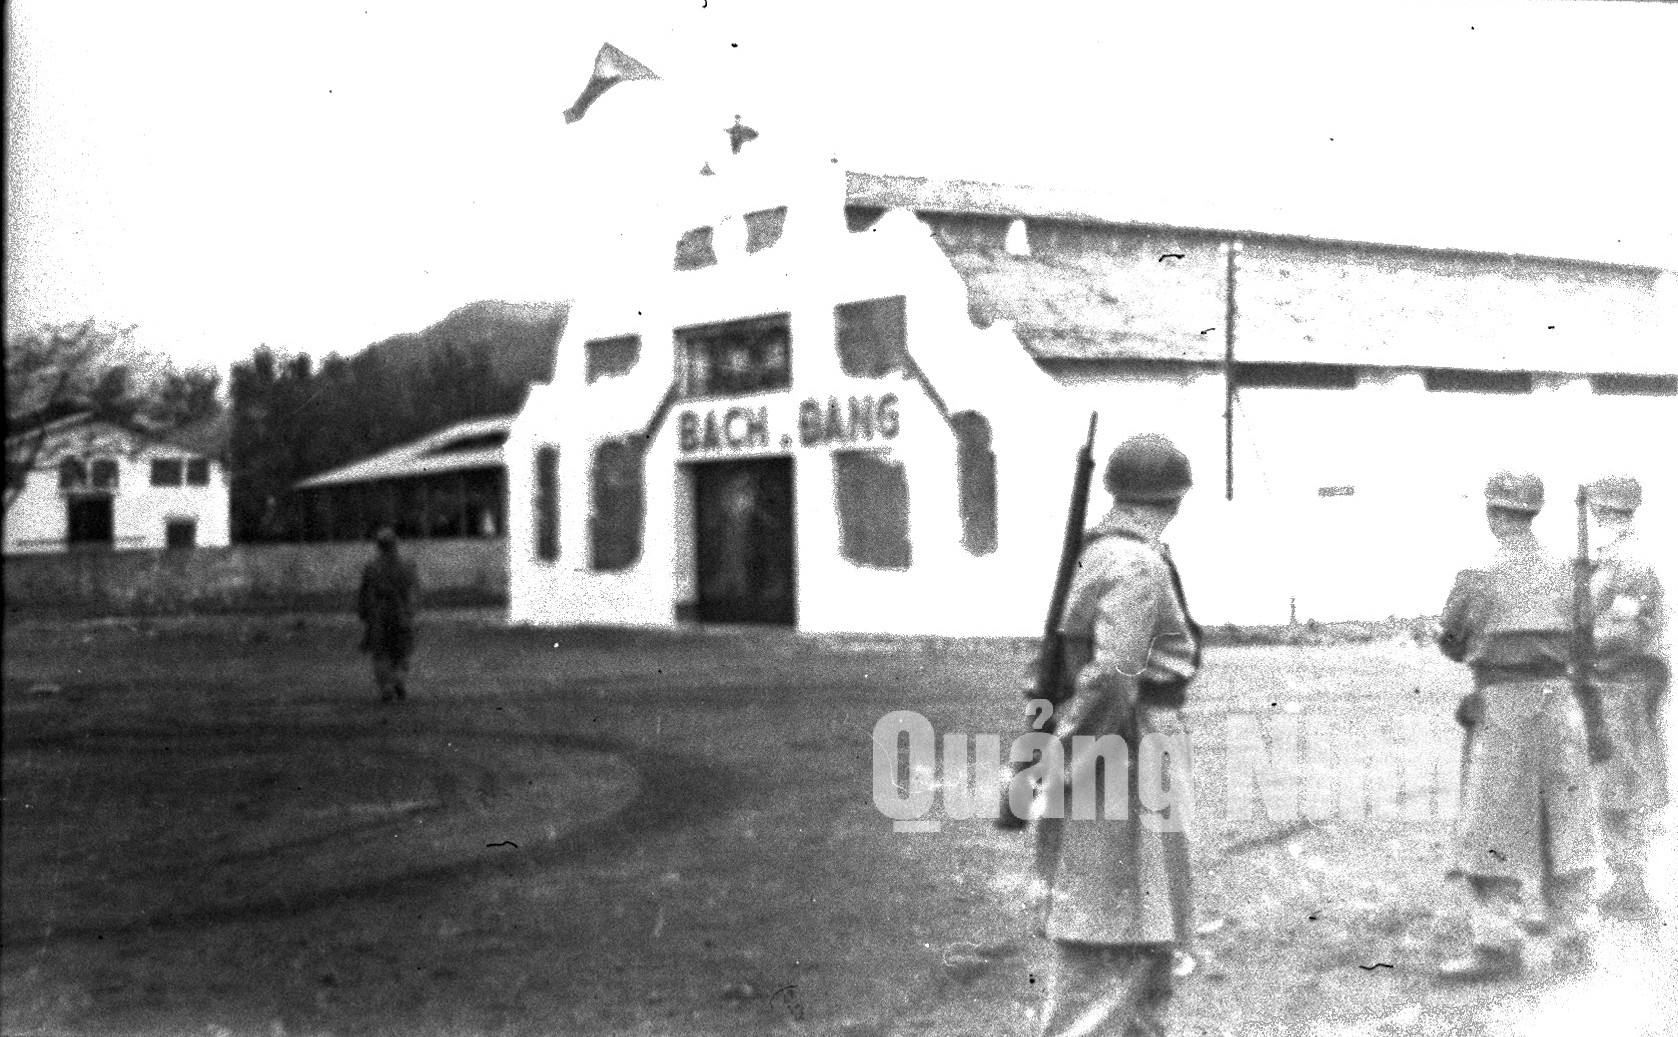 Quân Pháp chưa rút hết khỏi Hòn Gai, nhân dân ta đã treo cờ trên nóc rạp Bạch Đằng (4-1955). Ảnh tư liệu của Bảo tàng Quảng Ninh